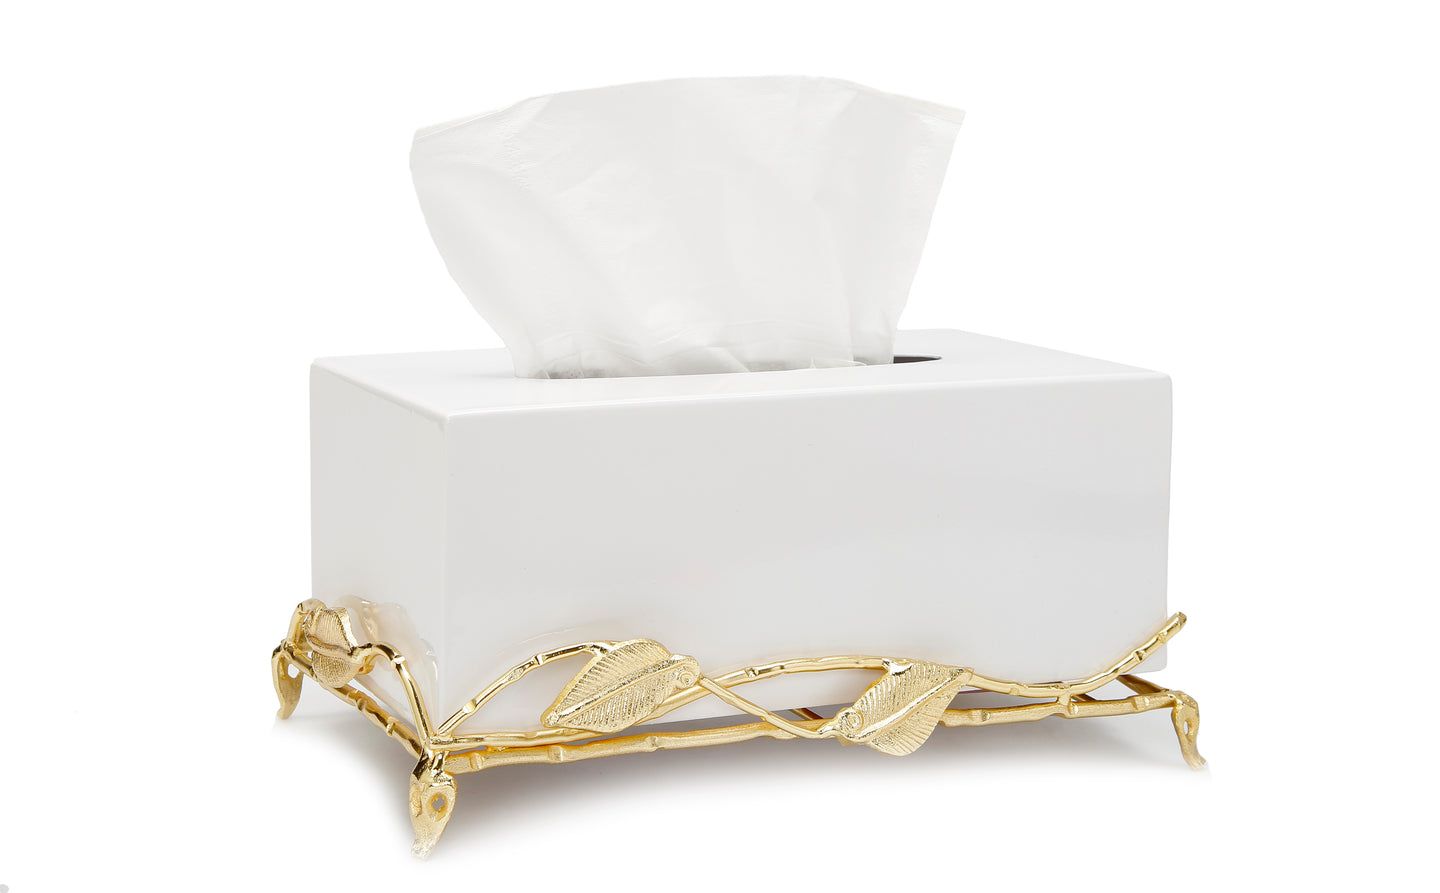 White Tissue Box on Gold Leaf Design Base